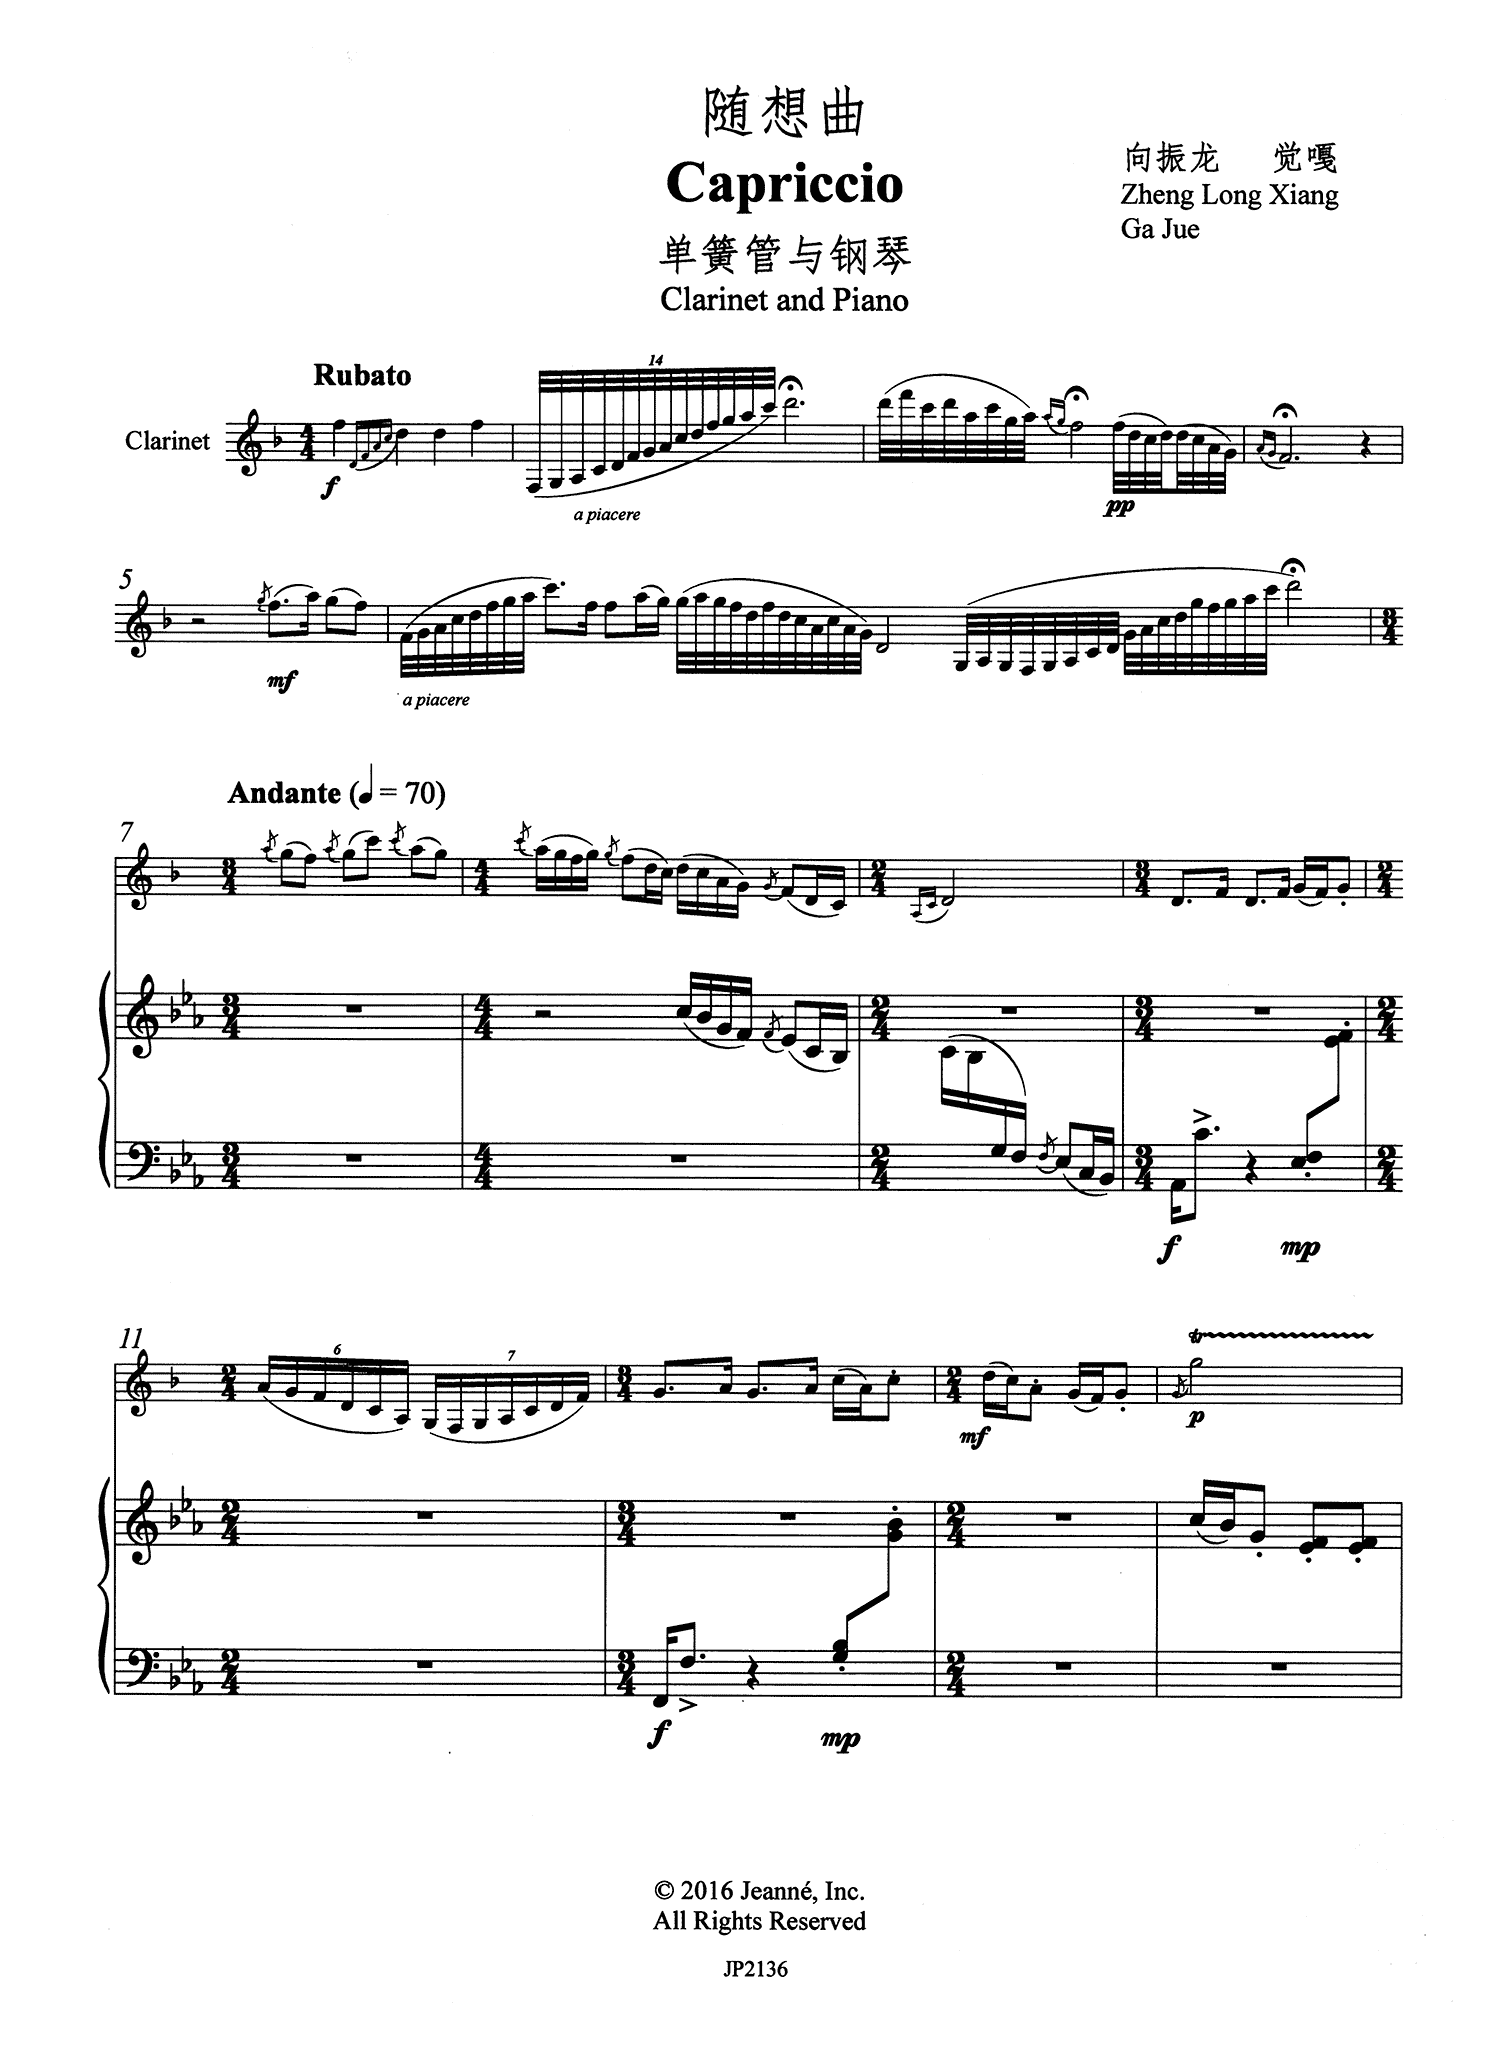 Xiang, Zheng Long: Capriccio, for clarinet & piano score